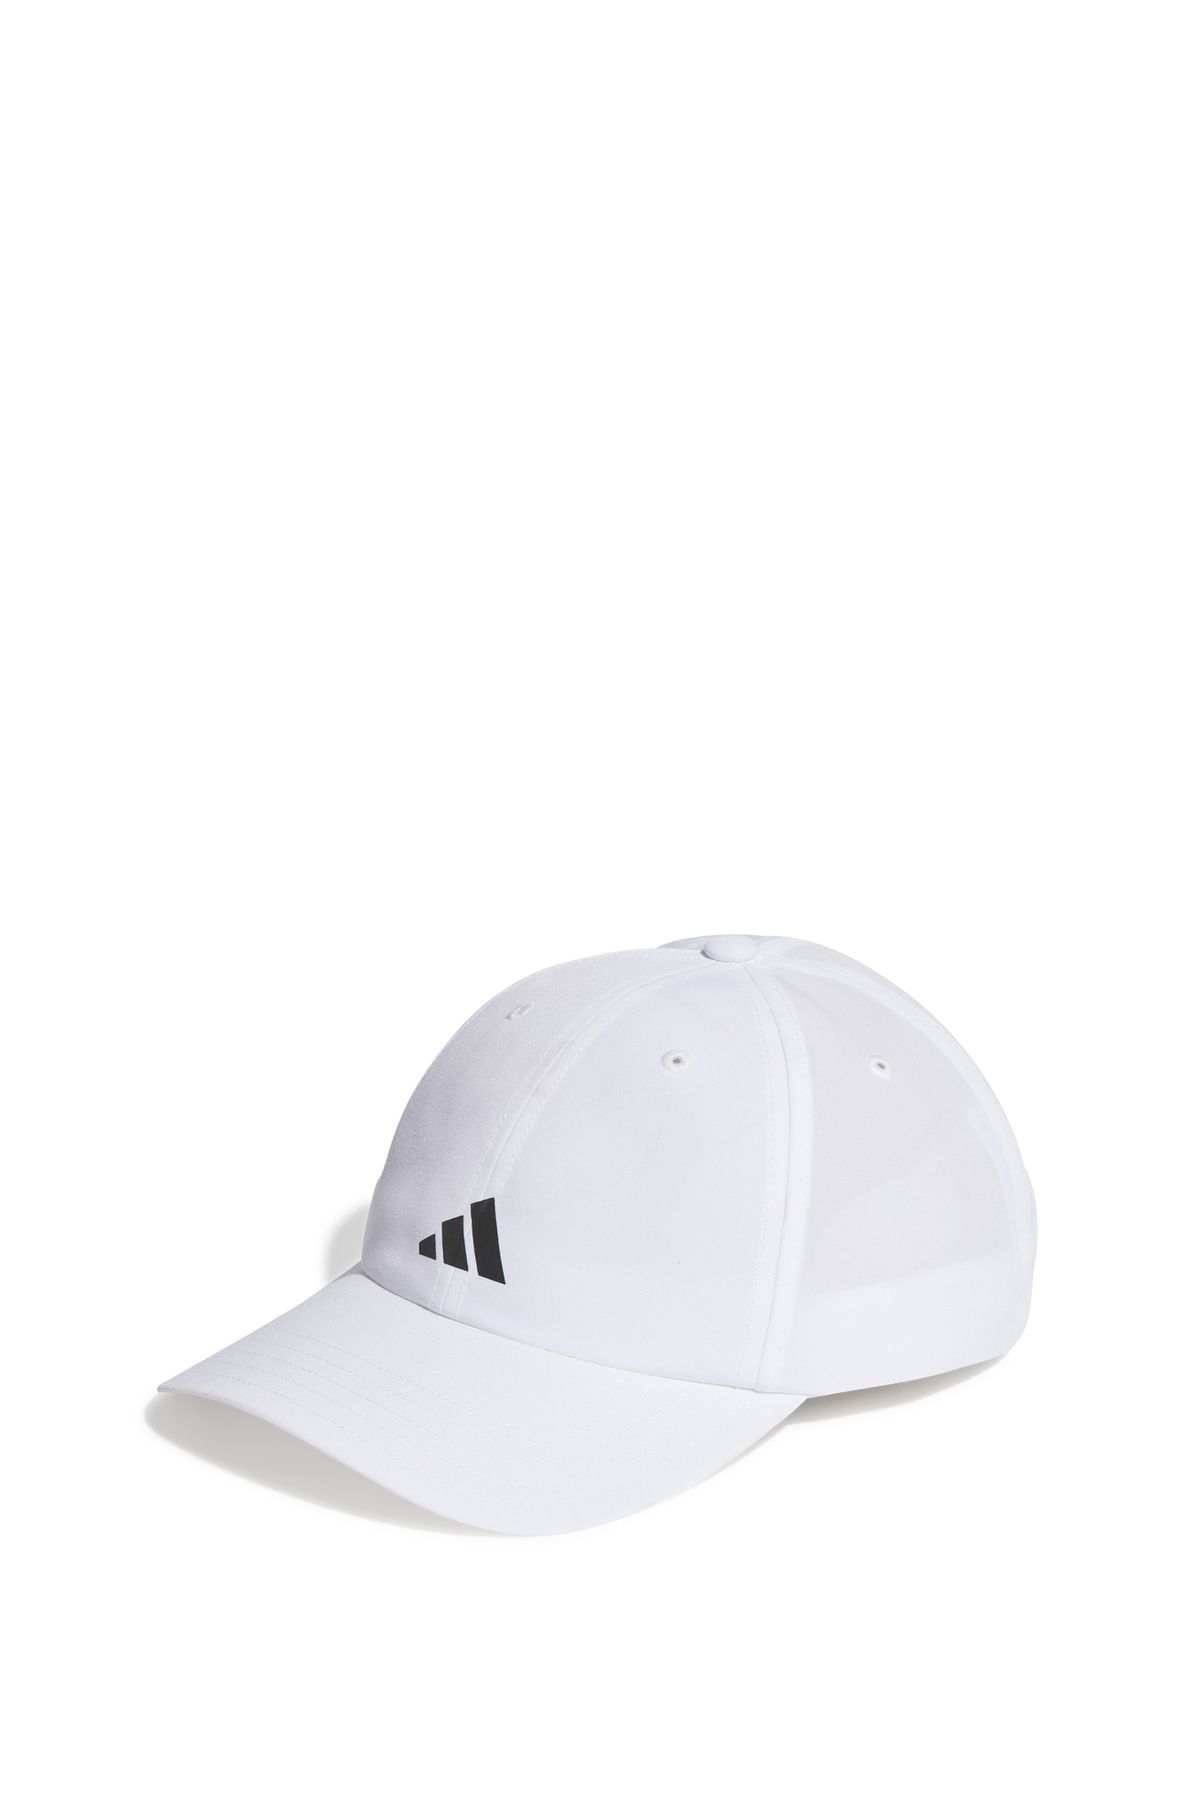 adidas Açık Beyaz Unisex Şapka IC2069 RUN